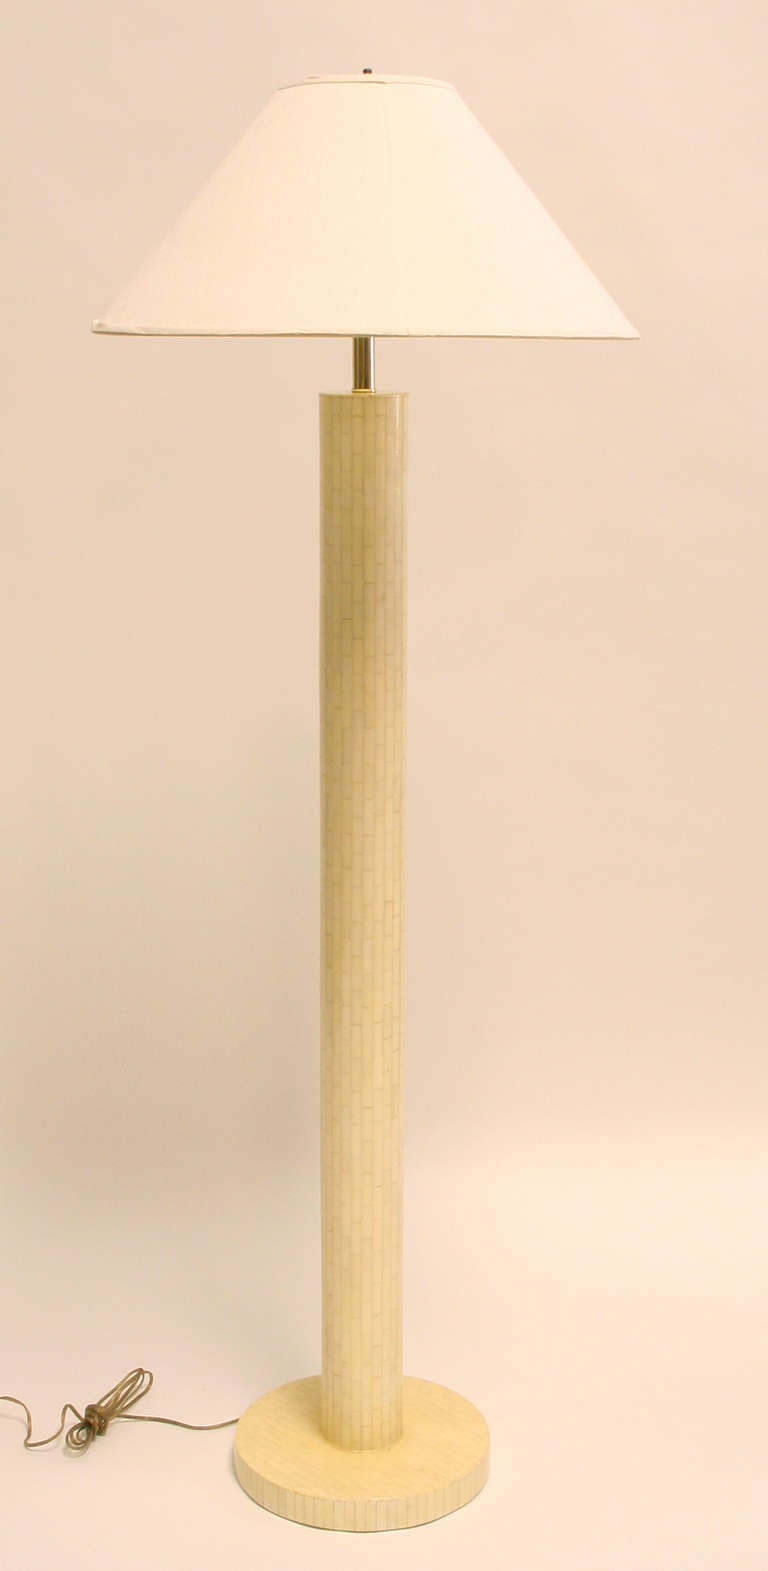 Lampadaire colonnaire en os tessellé ivoire par Enrique Garcel. 59.5